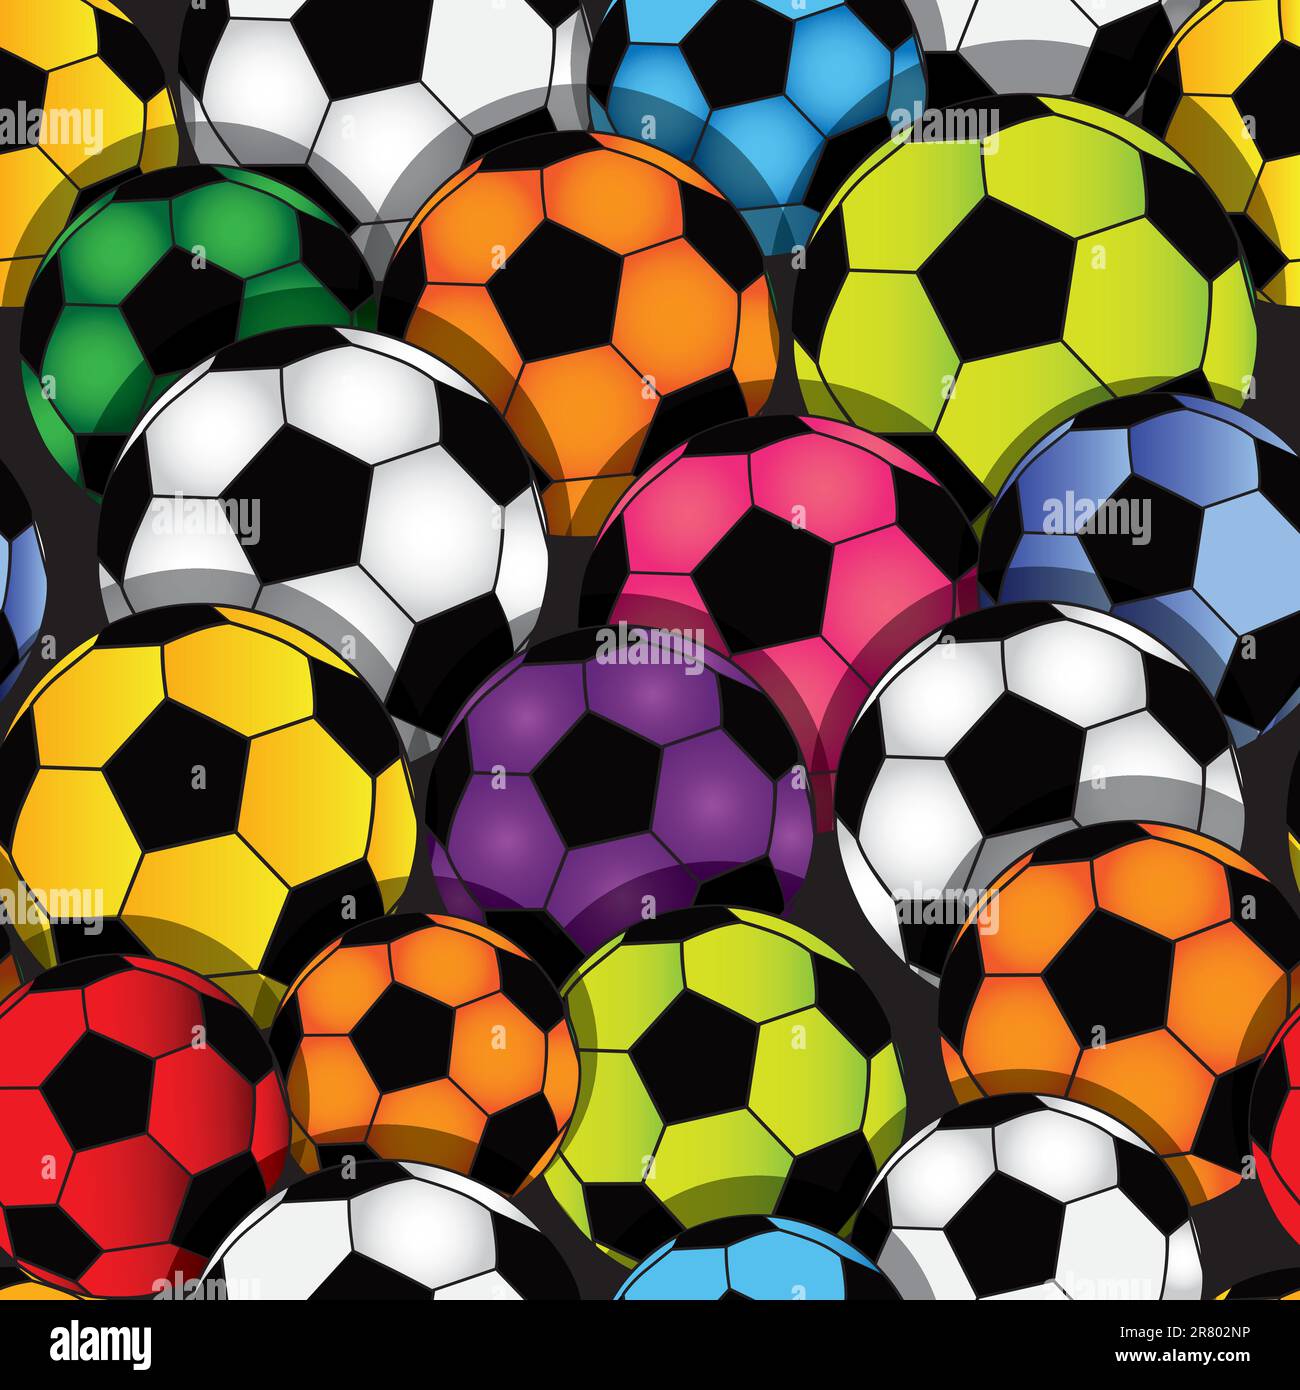 Football Wallpaper Seamless Sport Pattern Football: стоковая